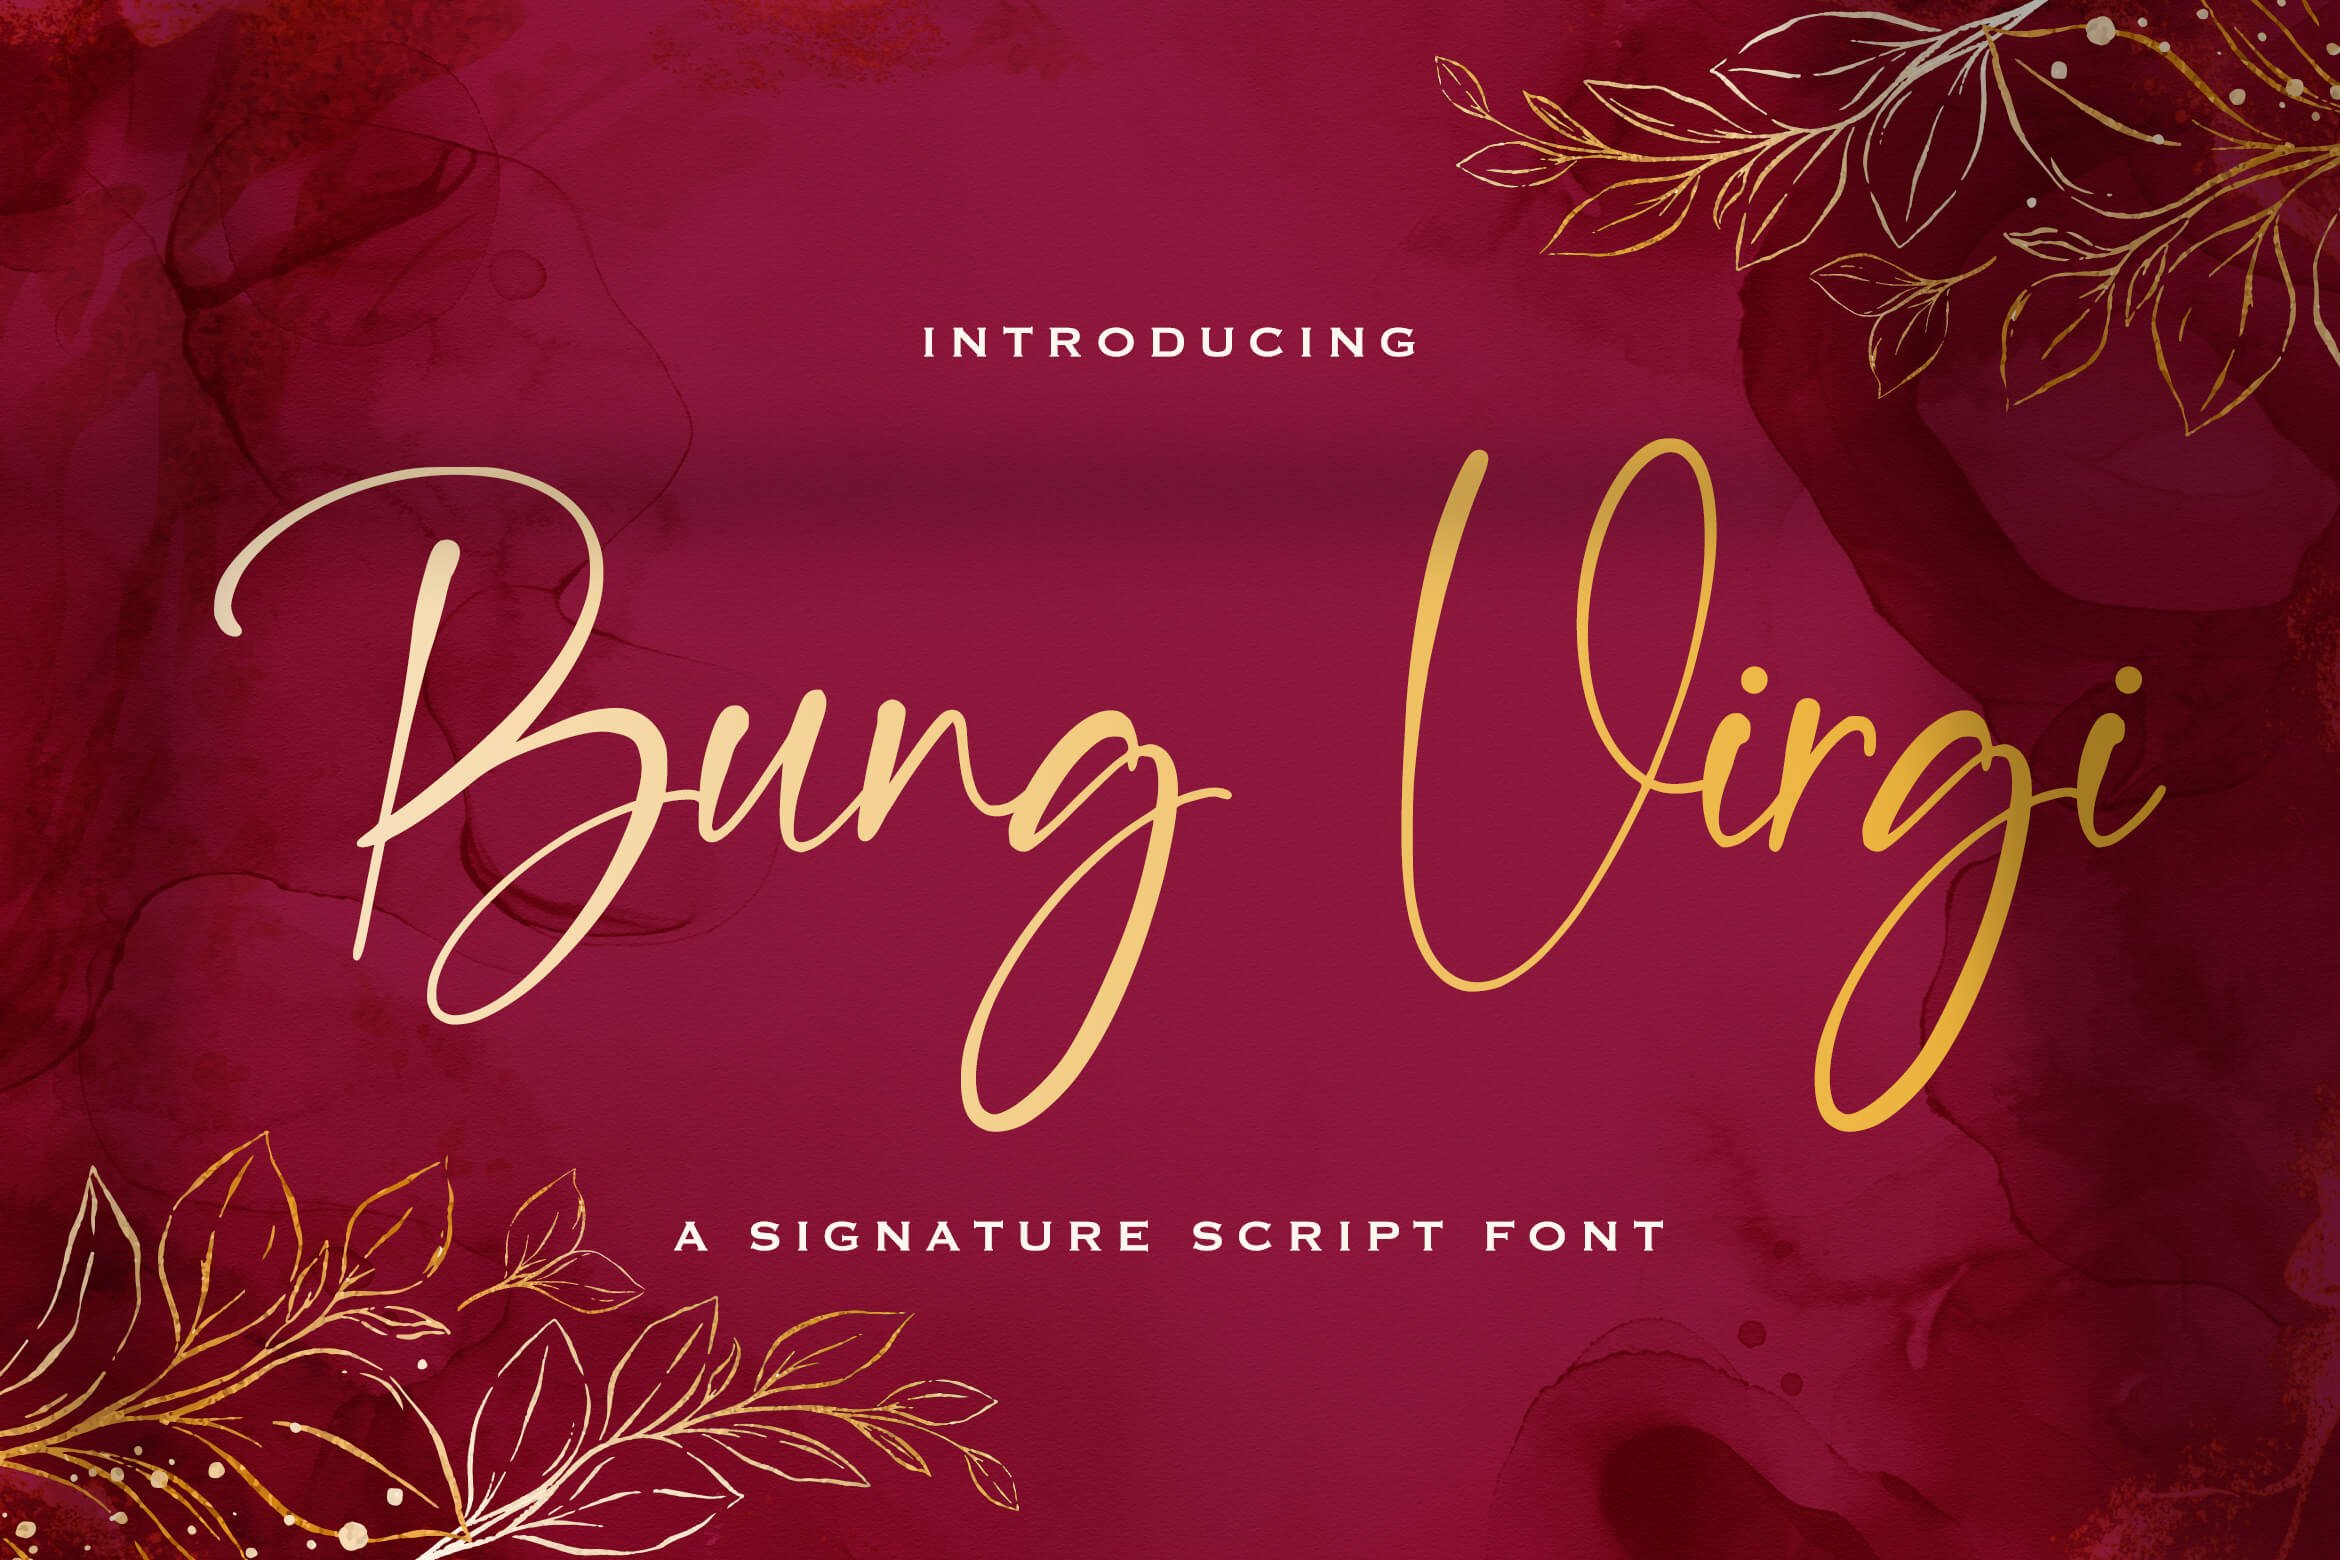 Bung Virgi - Signature Script Font cover image.